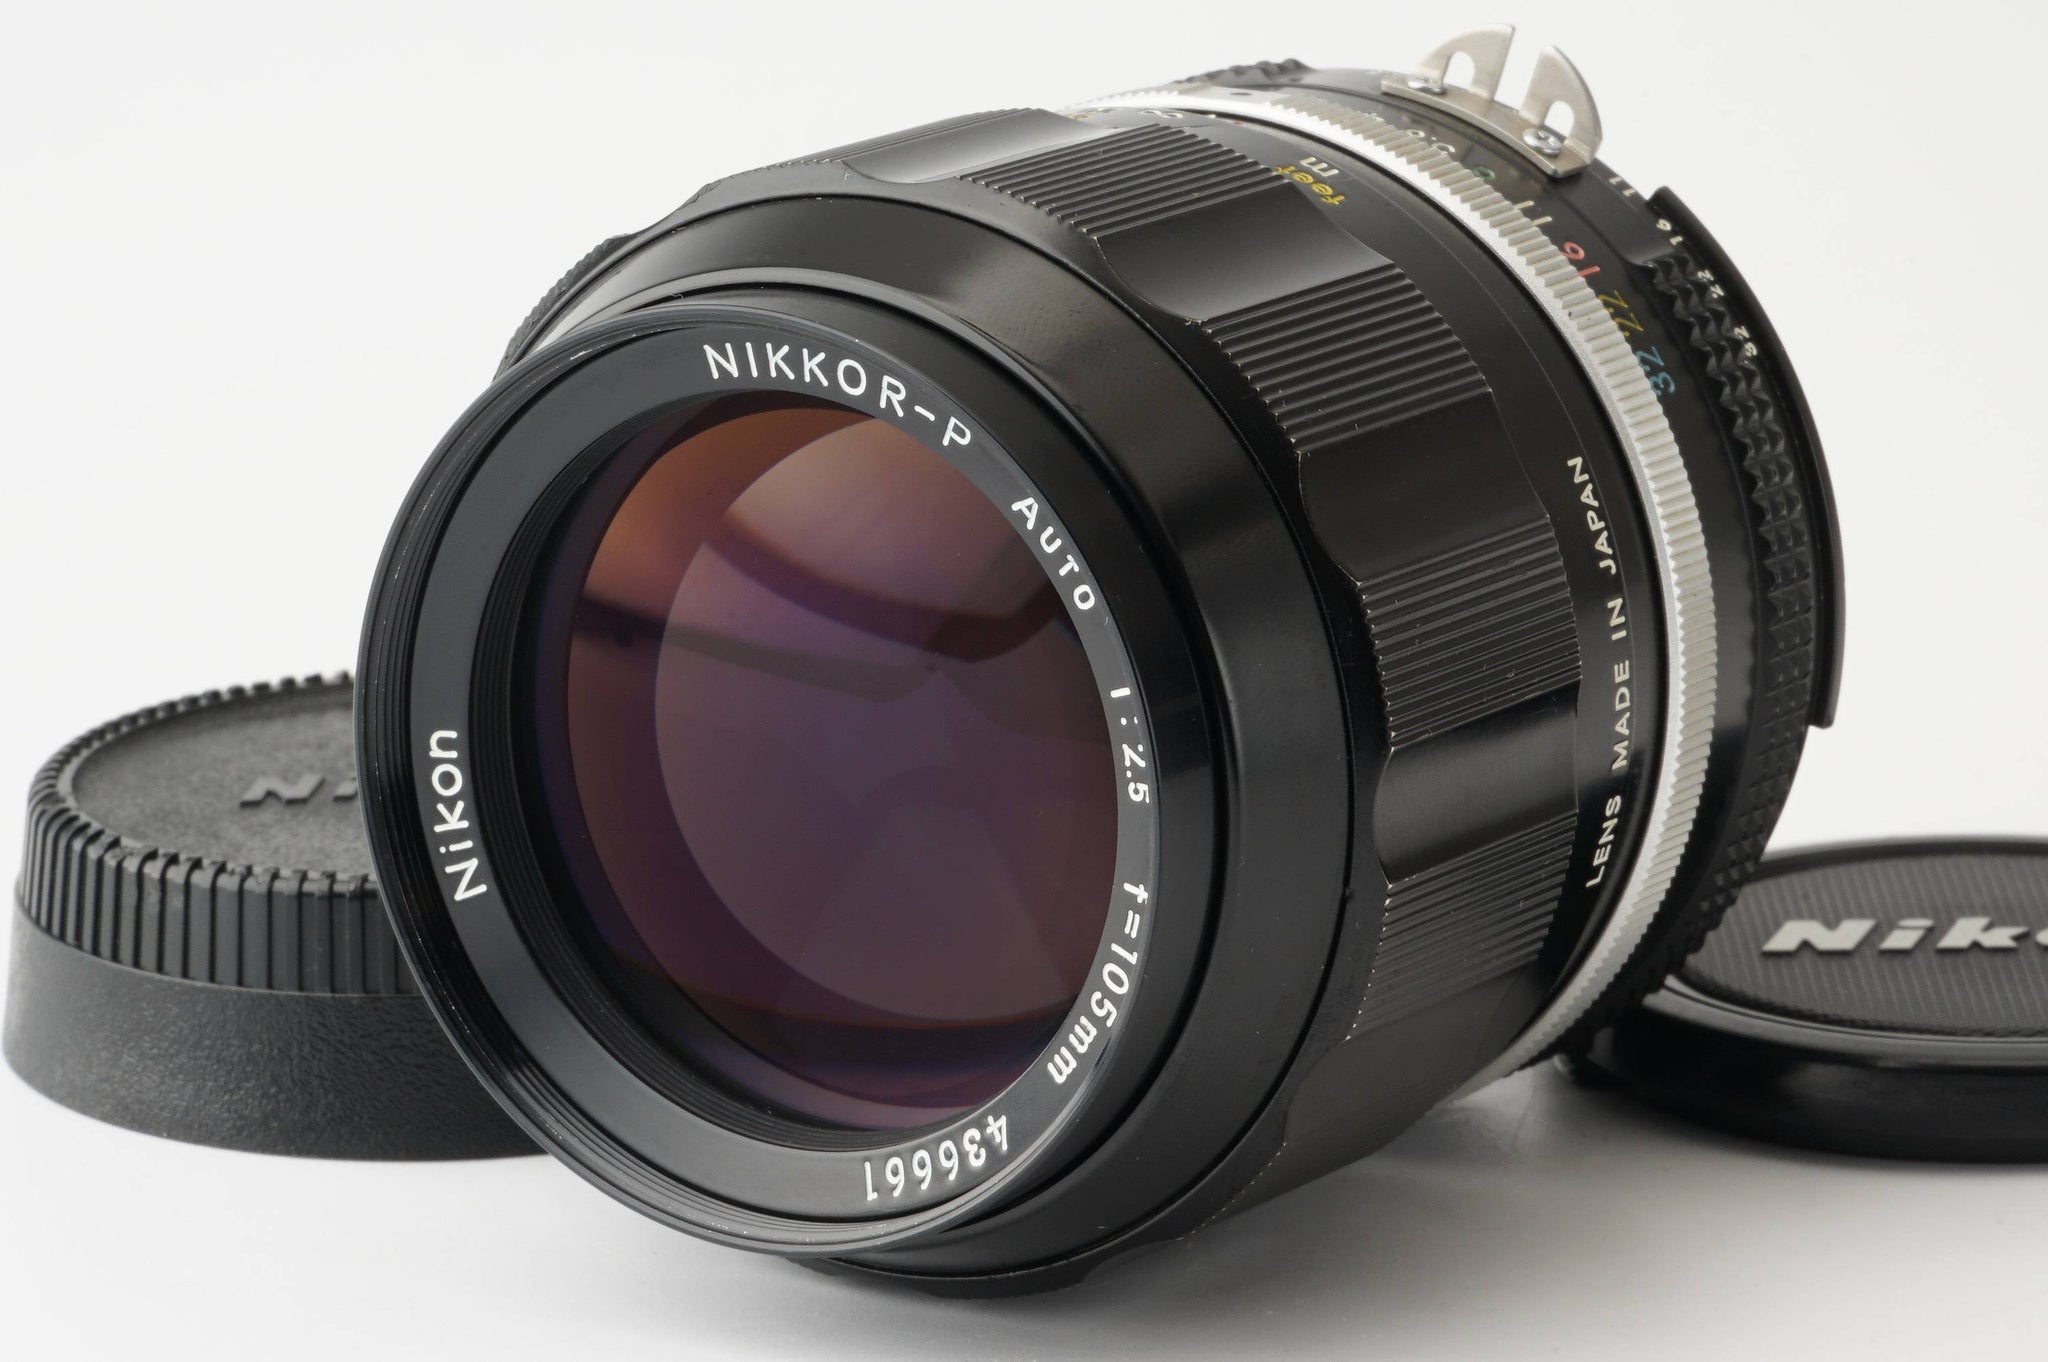 Nikon ニコン Nikkor-P Auto 105mm f2.5 Ai改オールドレンズ - レンズ 